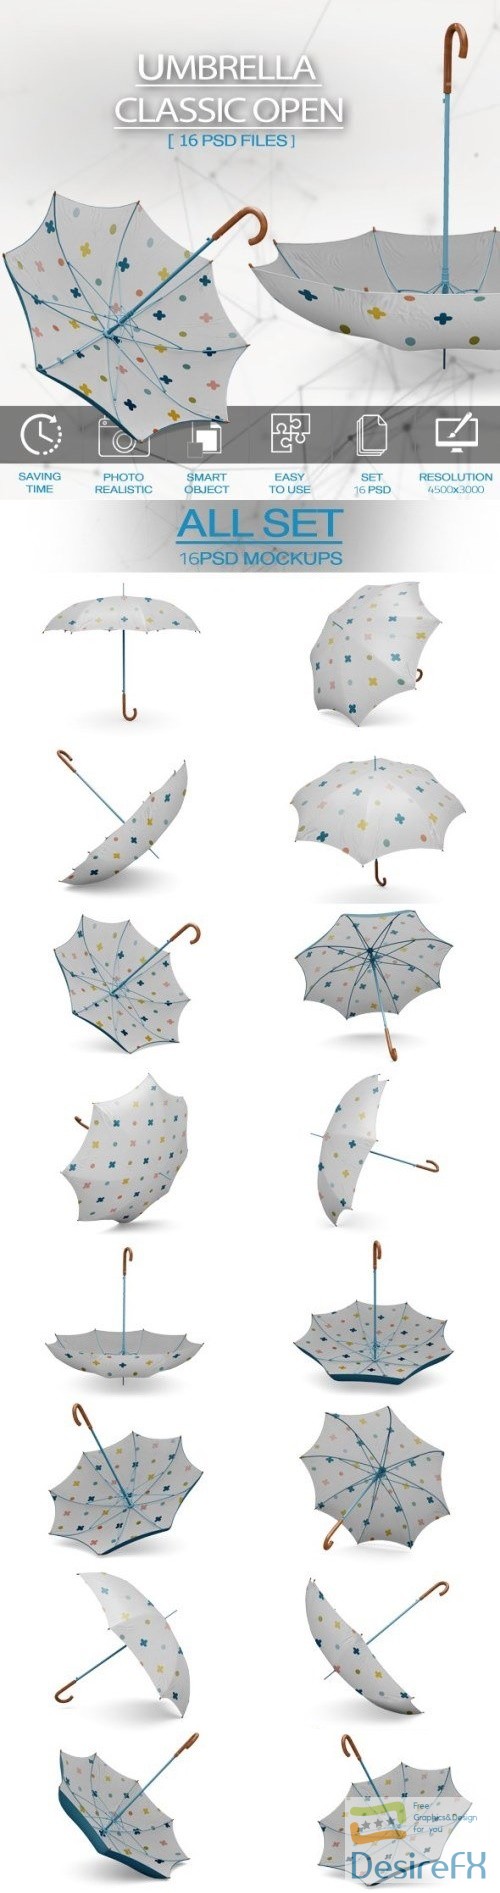 Umbrella Classic Open MockUp - 2108278